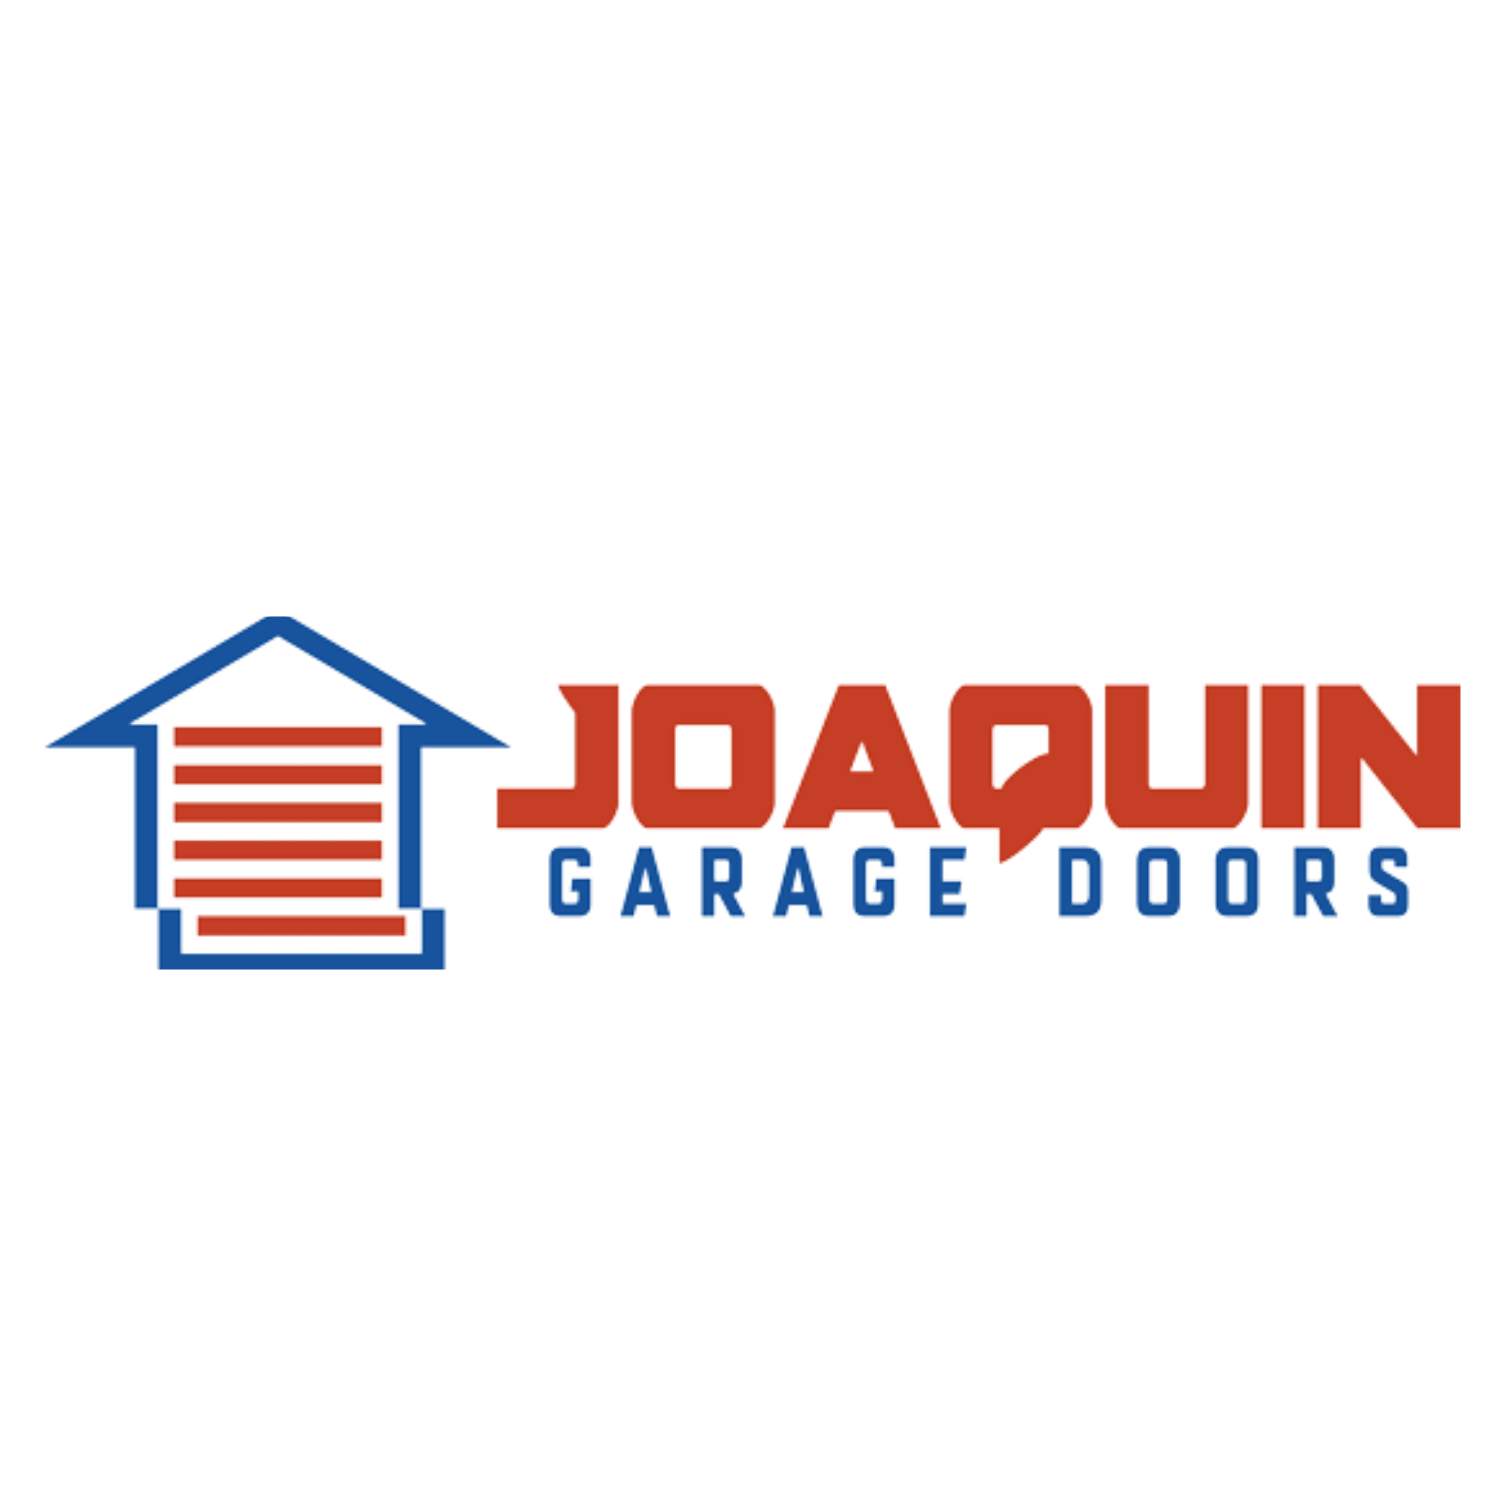 Joaquin Garage Doors